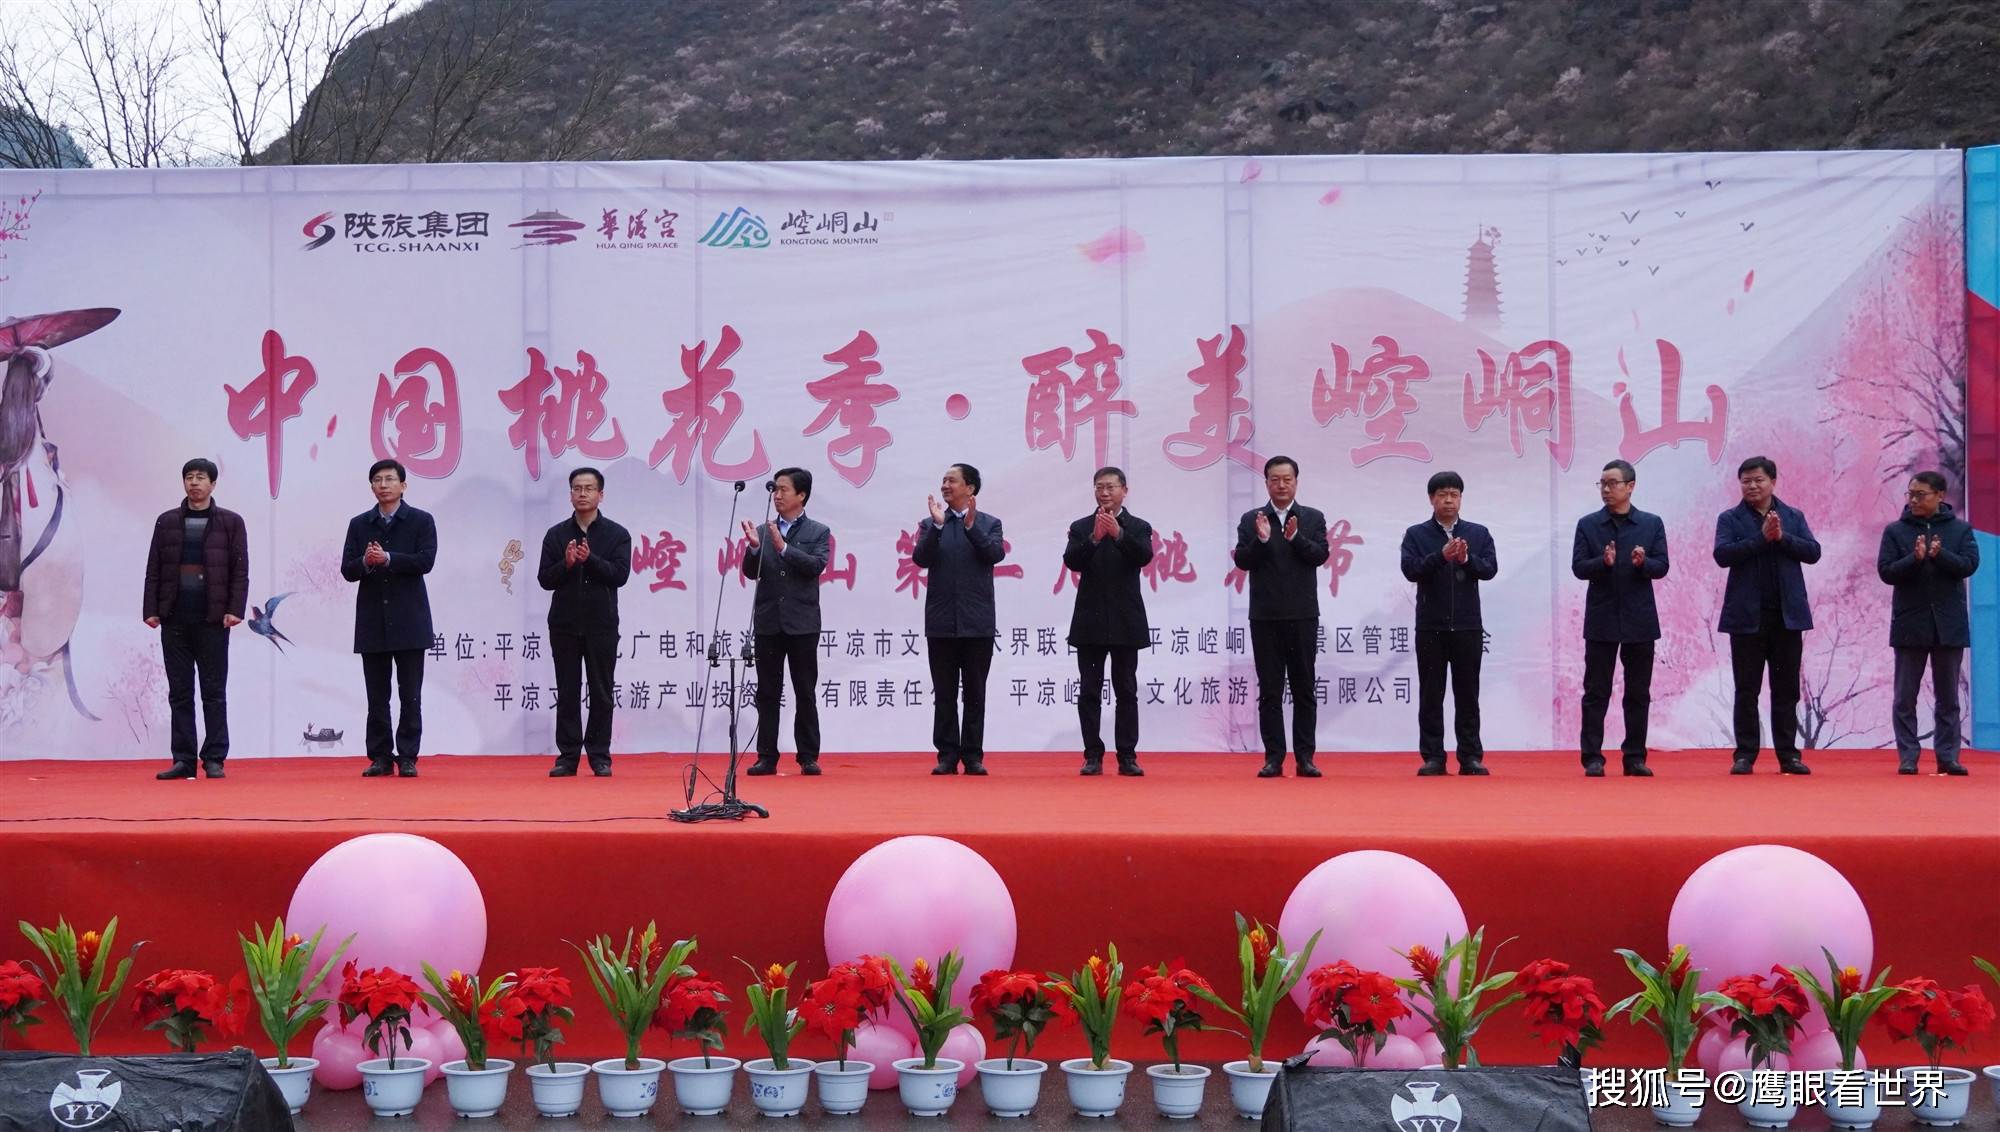 平凉天泰工贸集团荣获崆峒山第二届桃花节“最佳合作伙伴”称号